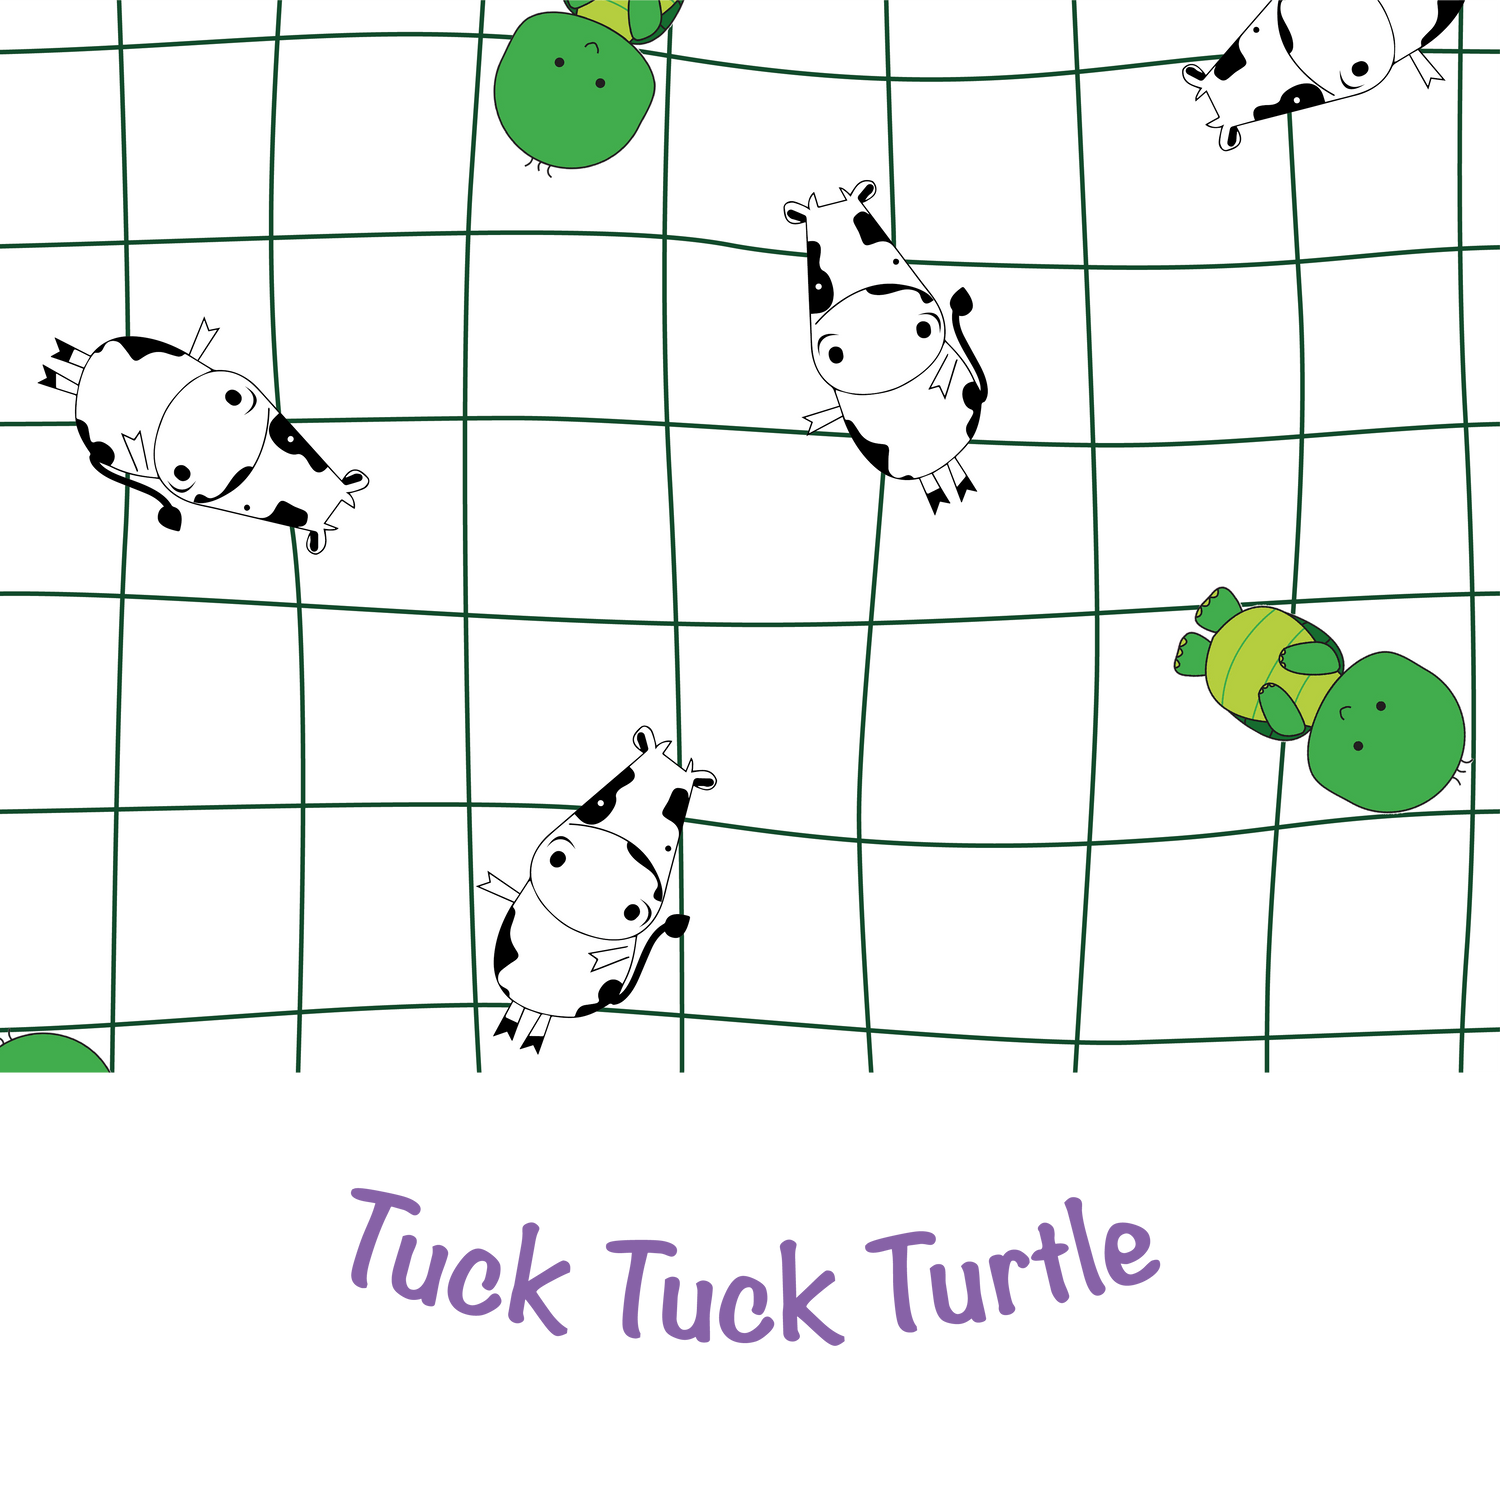 Tuck Tuck Turtle